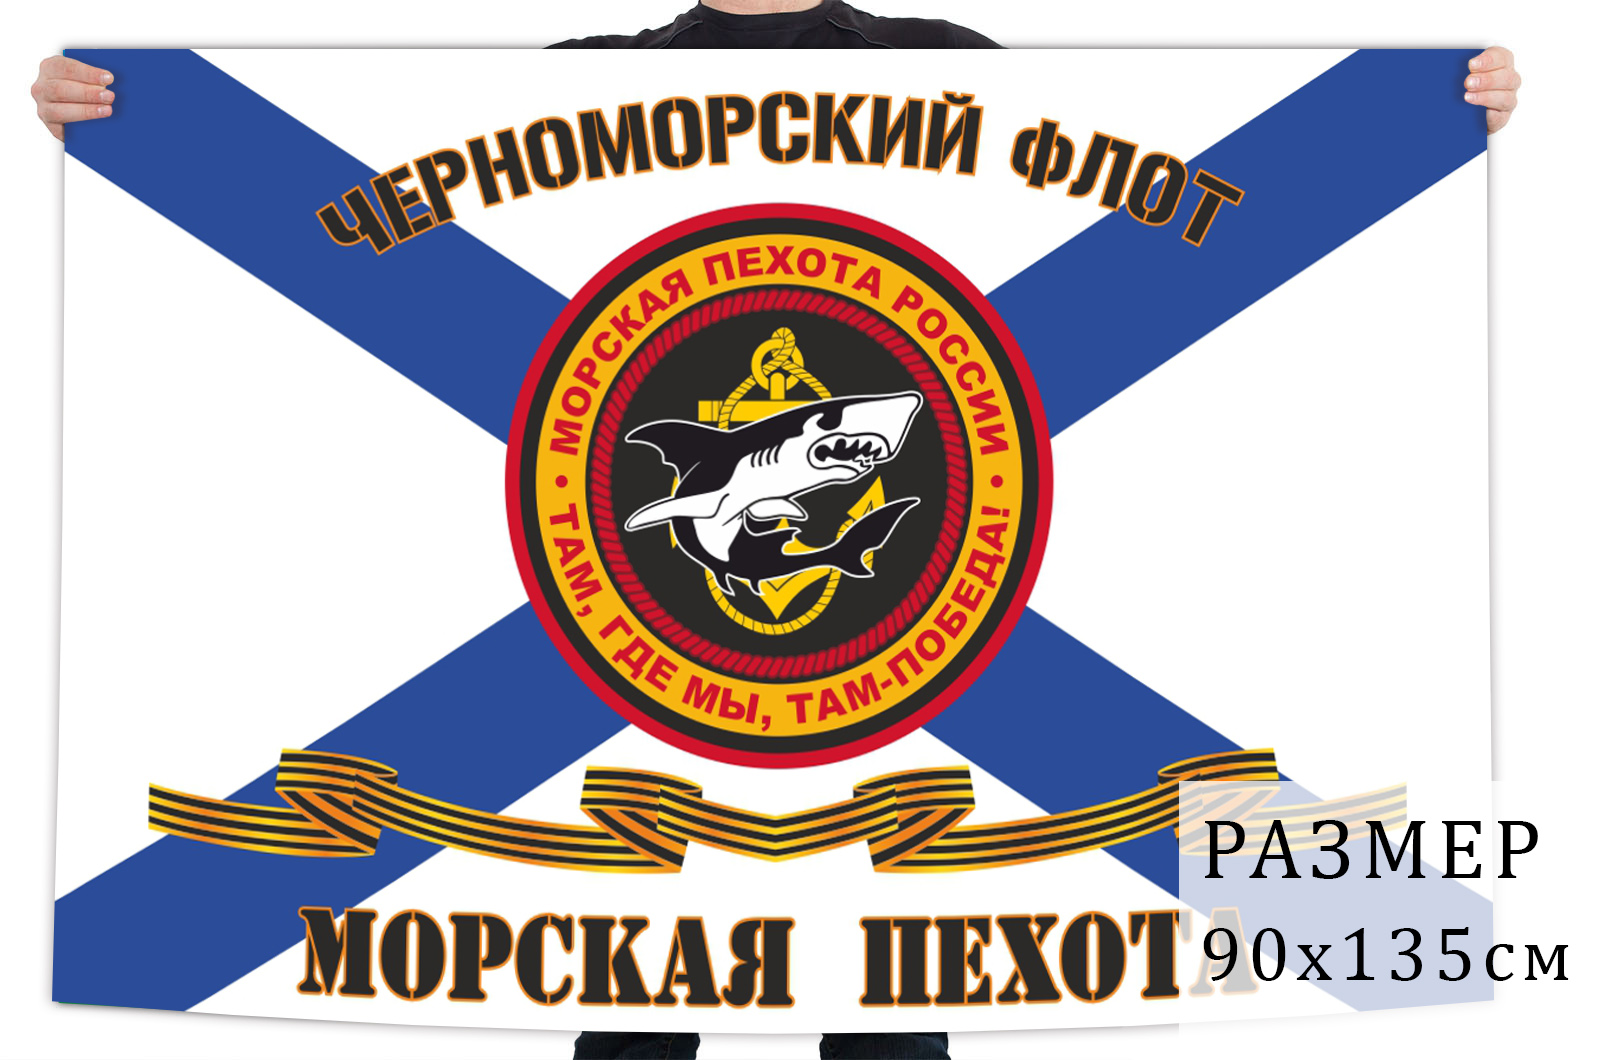 Андреевский флаг Морской пехоты Черноморского флота